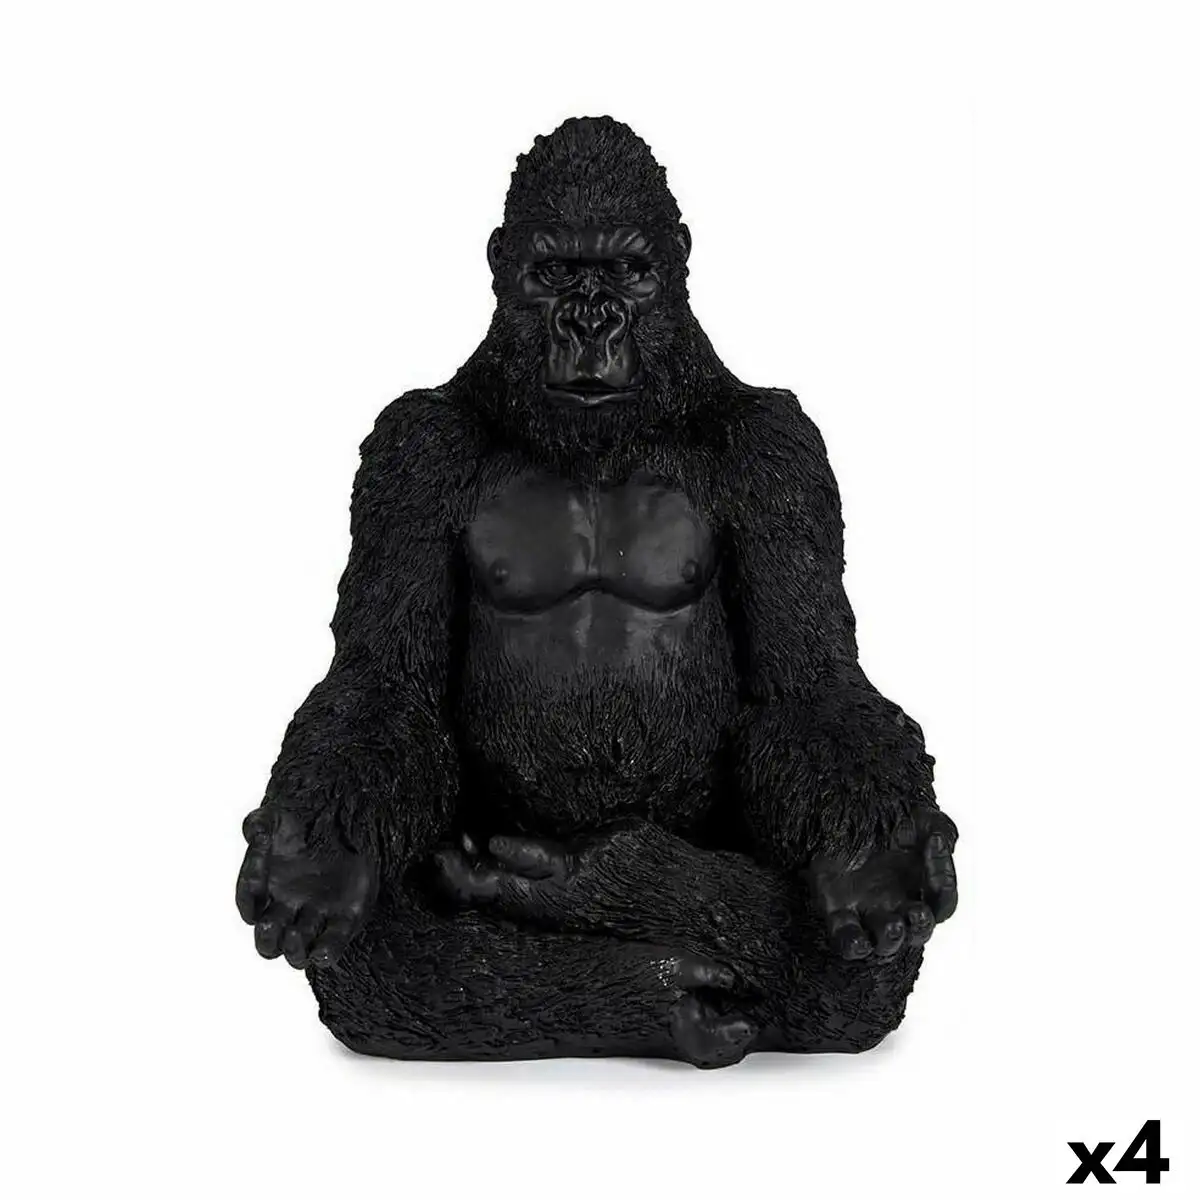 Figurine decorative gorille yoga noir 19 x 26 5 x 22 cm 4 unites _1431. DIAYTAR SENEGAL - Votre Passage vers le Raffinement. Plongez dans notre univers de produits exquis et choisissez des articles qui ajoutent une touche de sophistication à votre vie.